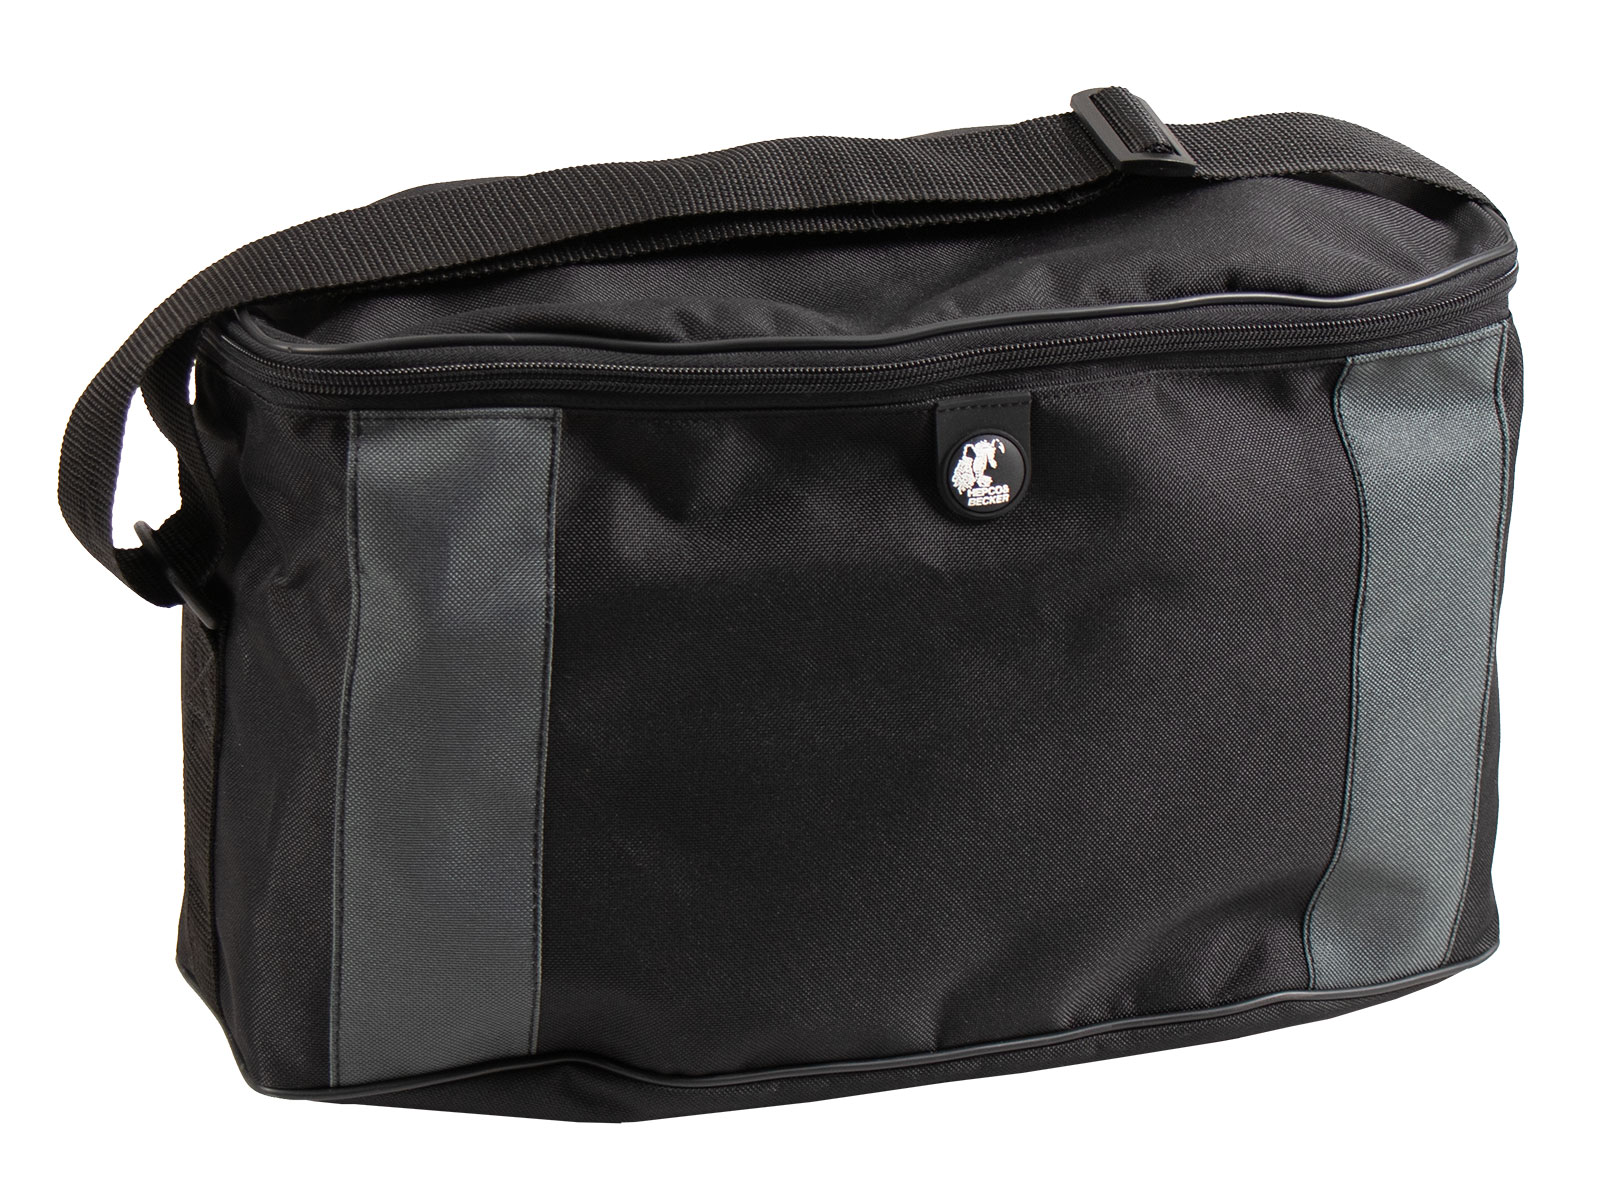 Inner bag for Xcore side case